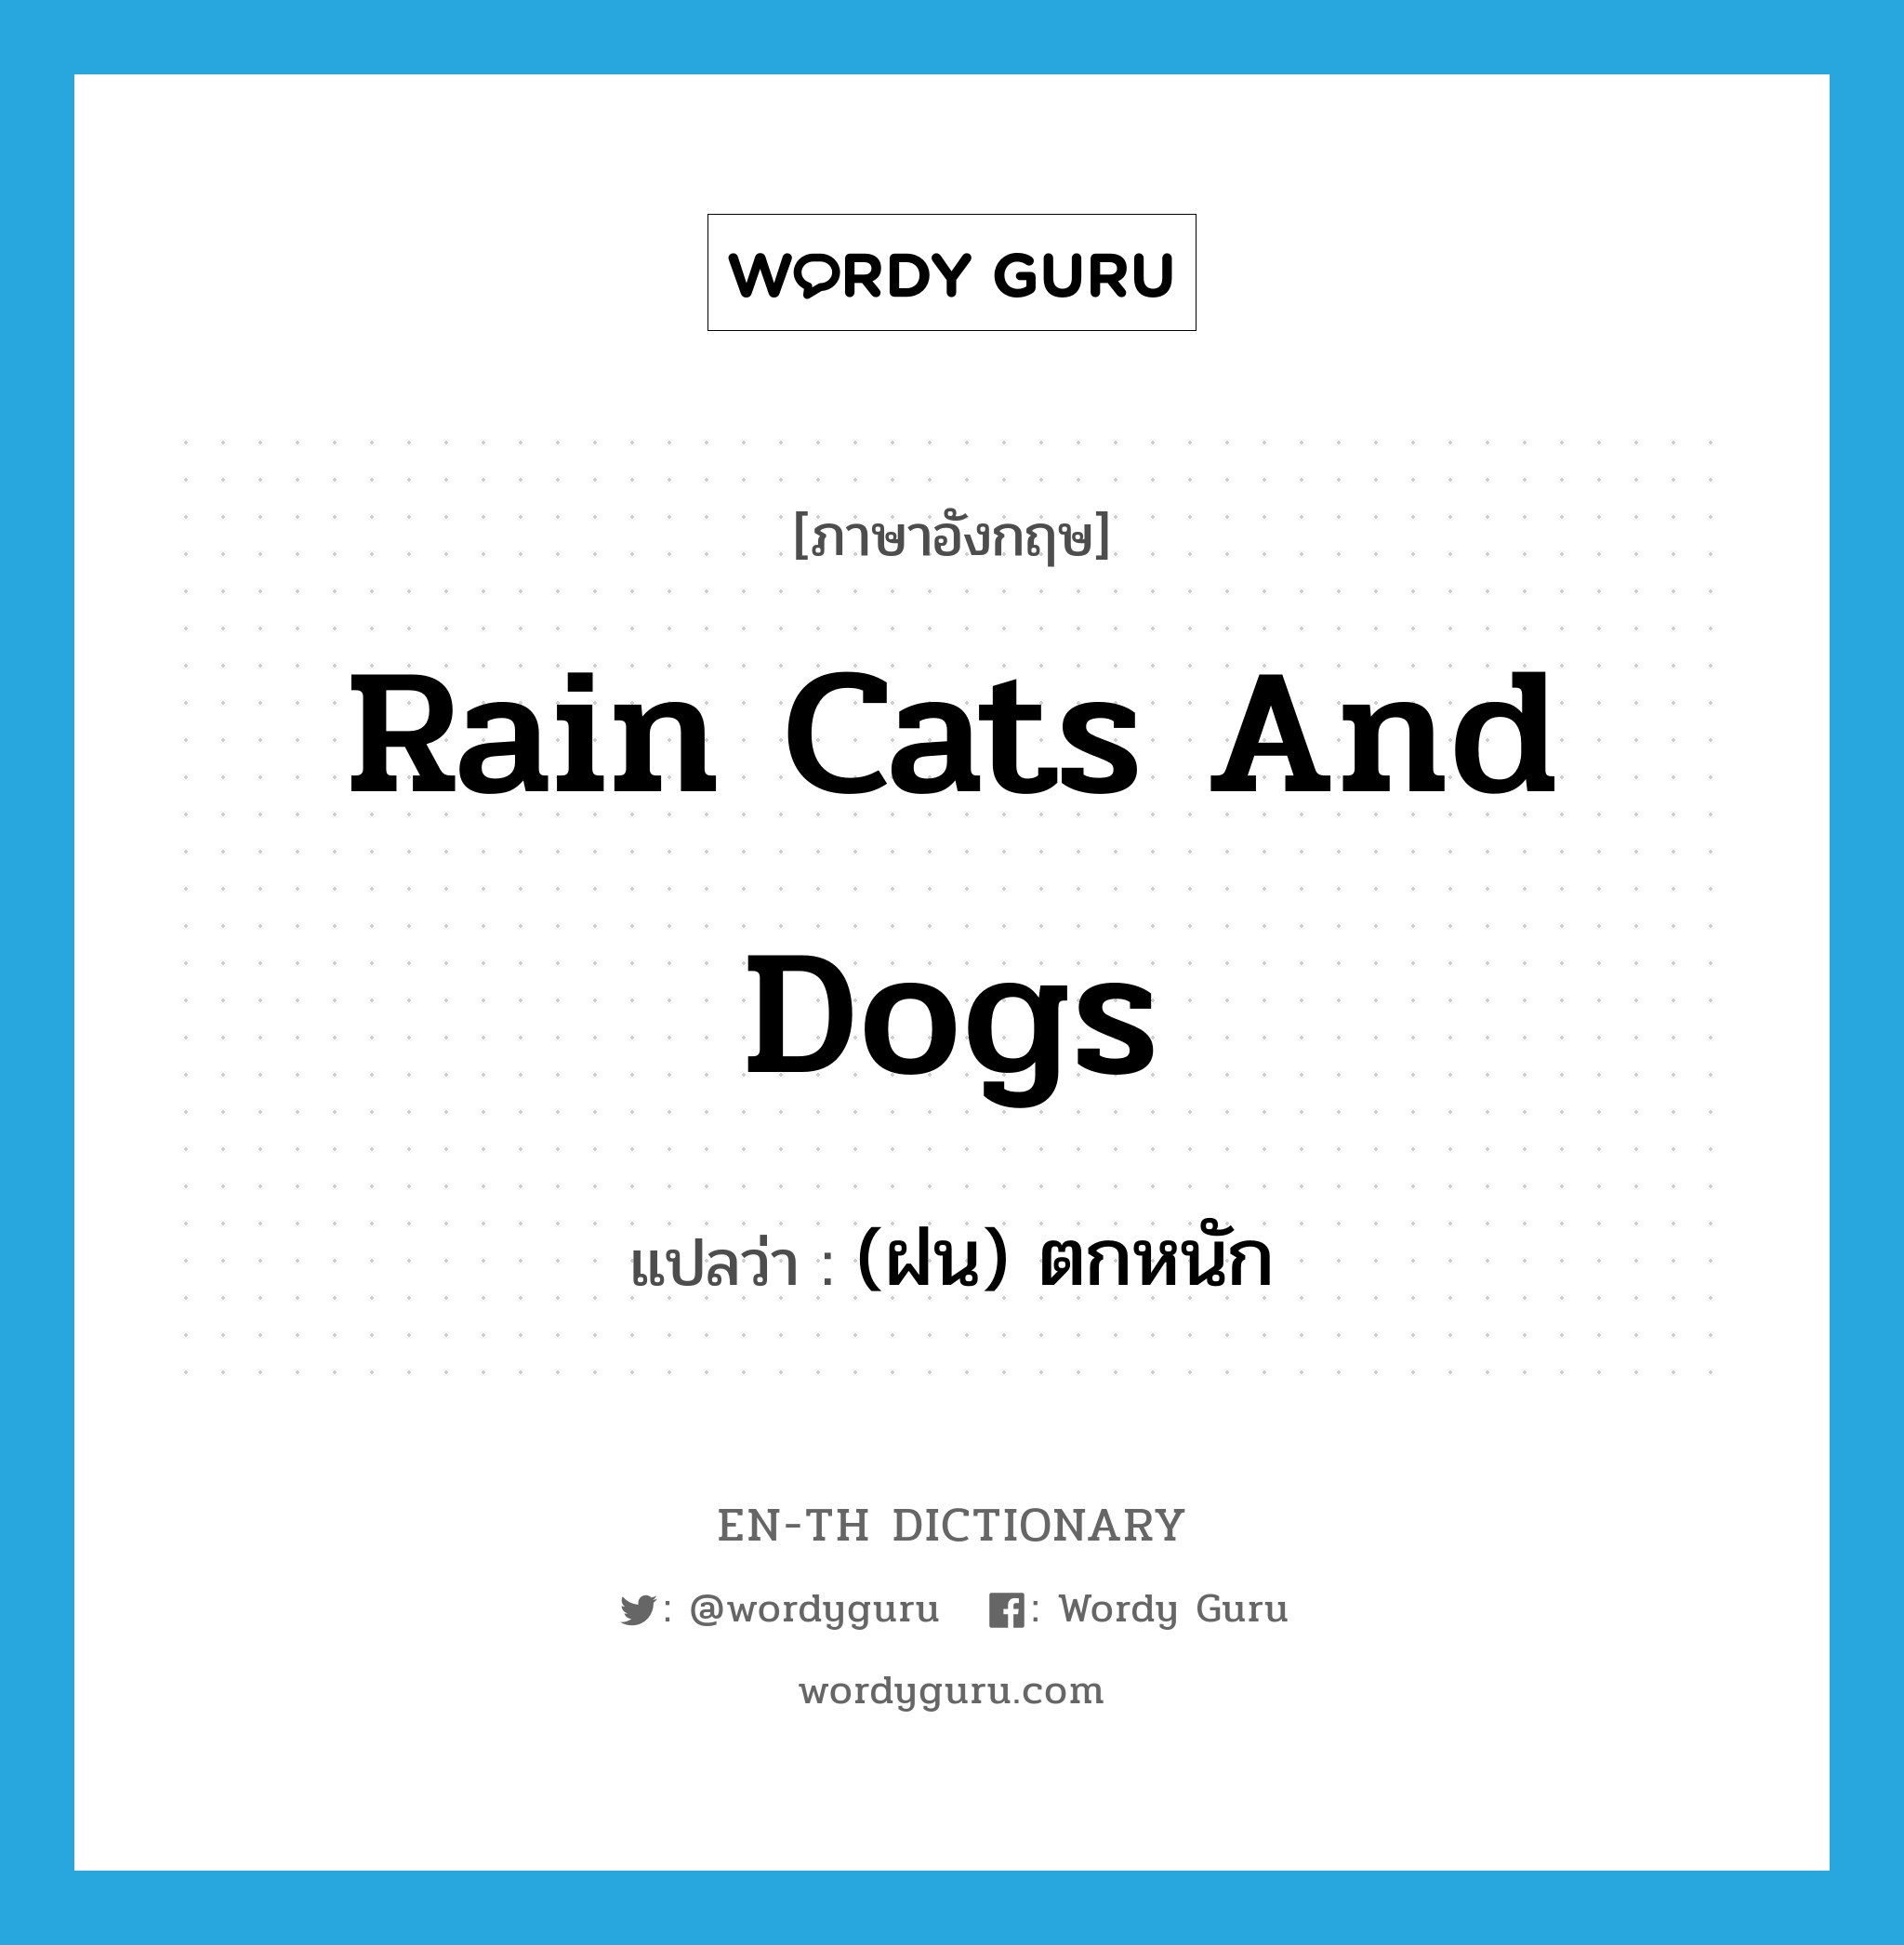 (ฝน) ตกหนัก ภาษาอังกฤษ?, คำศัพท์ภาษาอังกฤษ (ฝน) ตกหนัก แปลว่า rain cats and dogs ประเภท IDM หมวด IDM